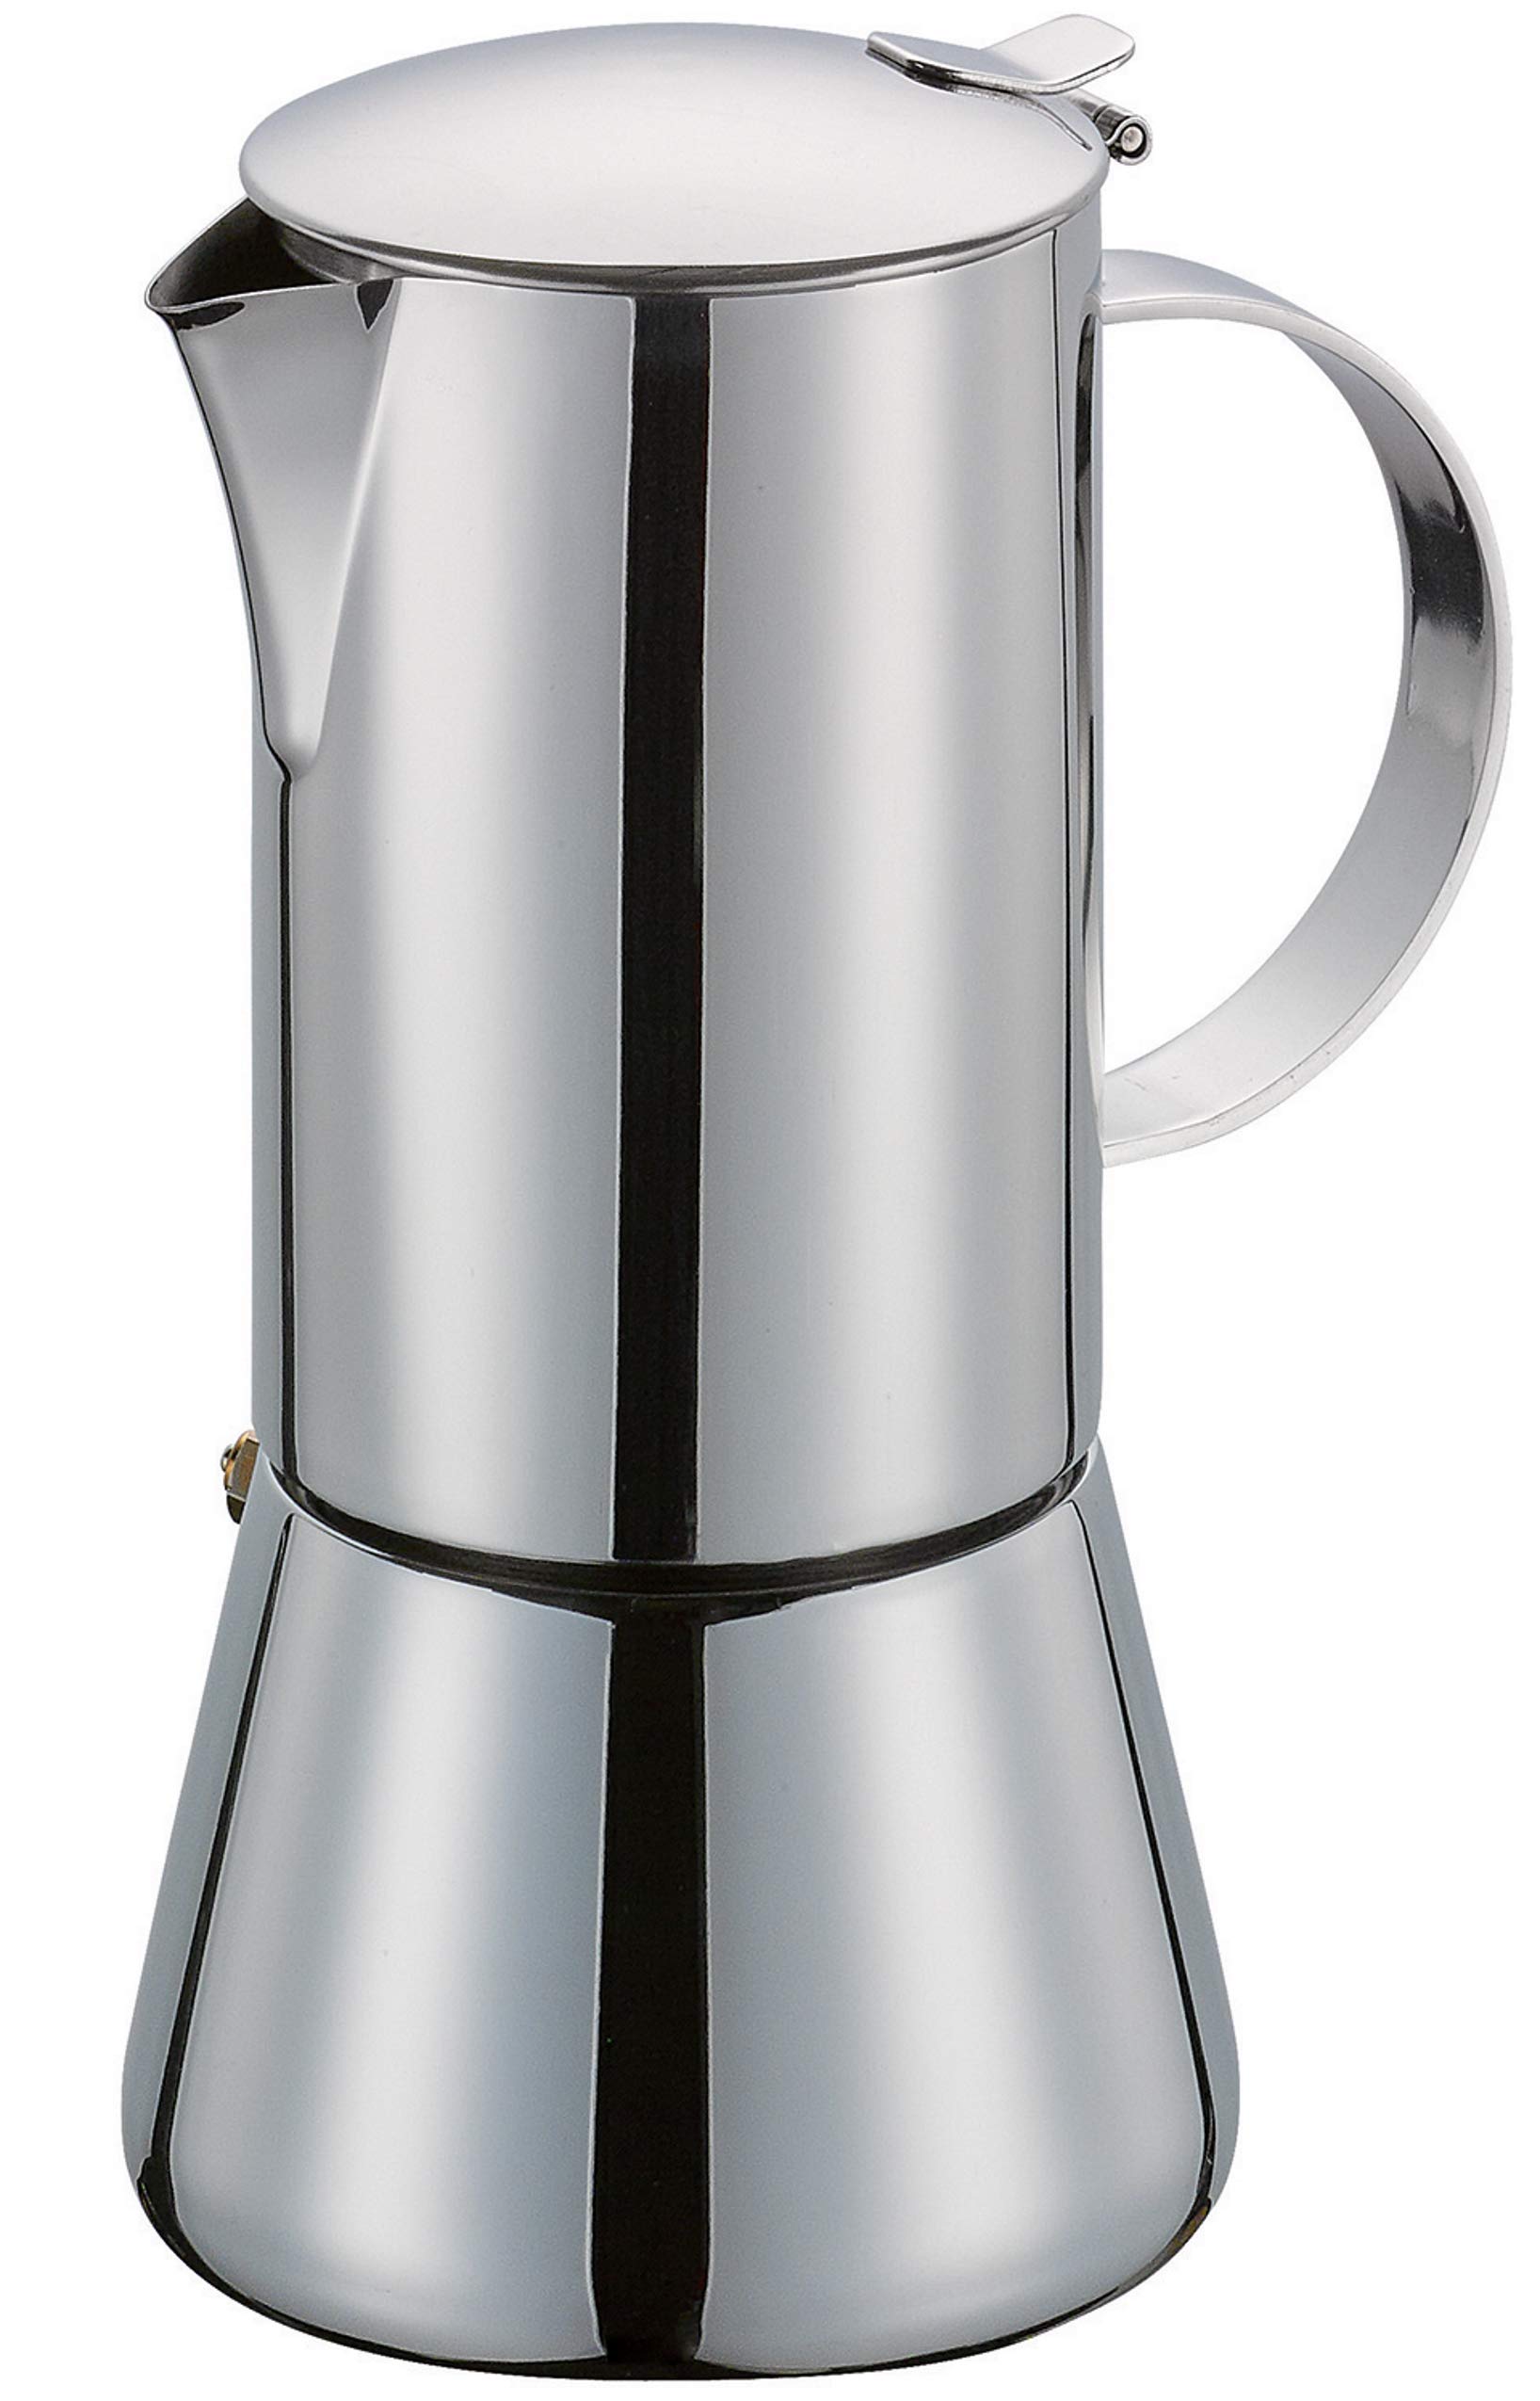 Cilio AIDA Espressokocher 6 Tassen | Edelstahl poliert | für alle Herdarten, auch Induktion geeignet | Ø 9cm, H:17,5cm | italienische Kaffeemaschine | Cafetera | Mokka Maschine